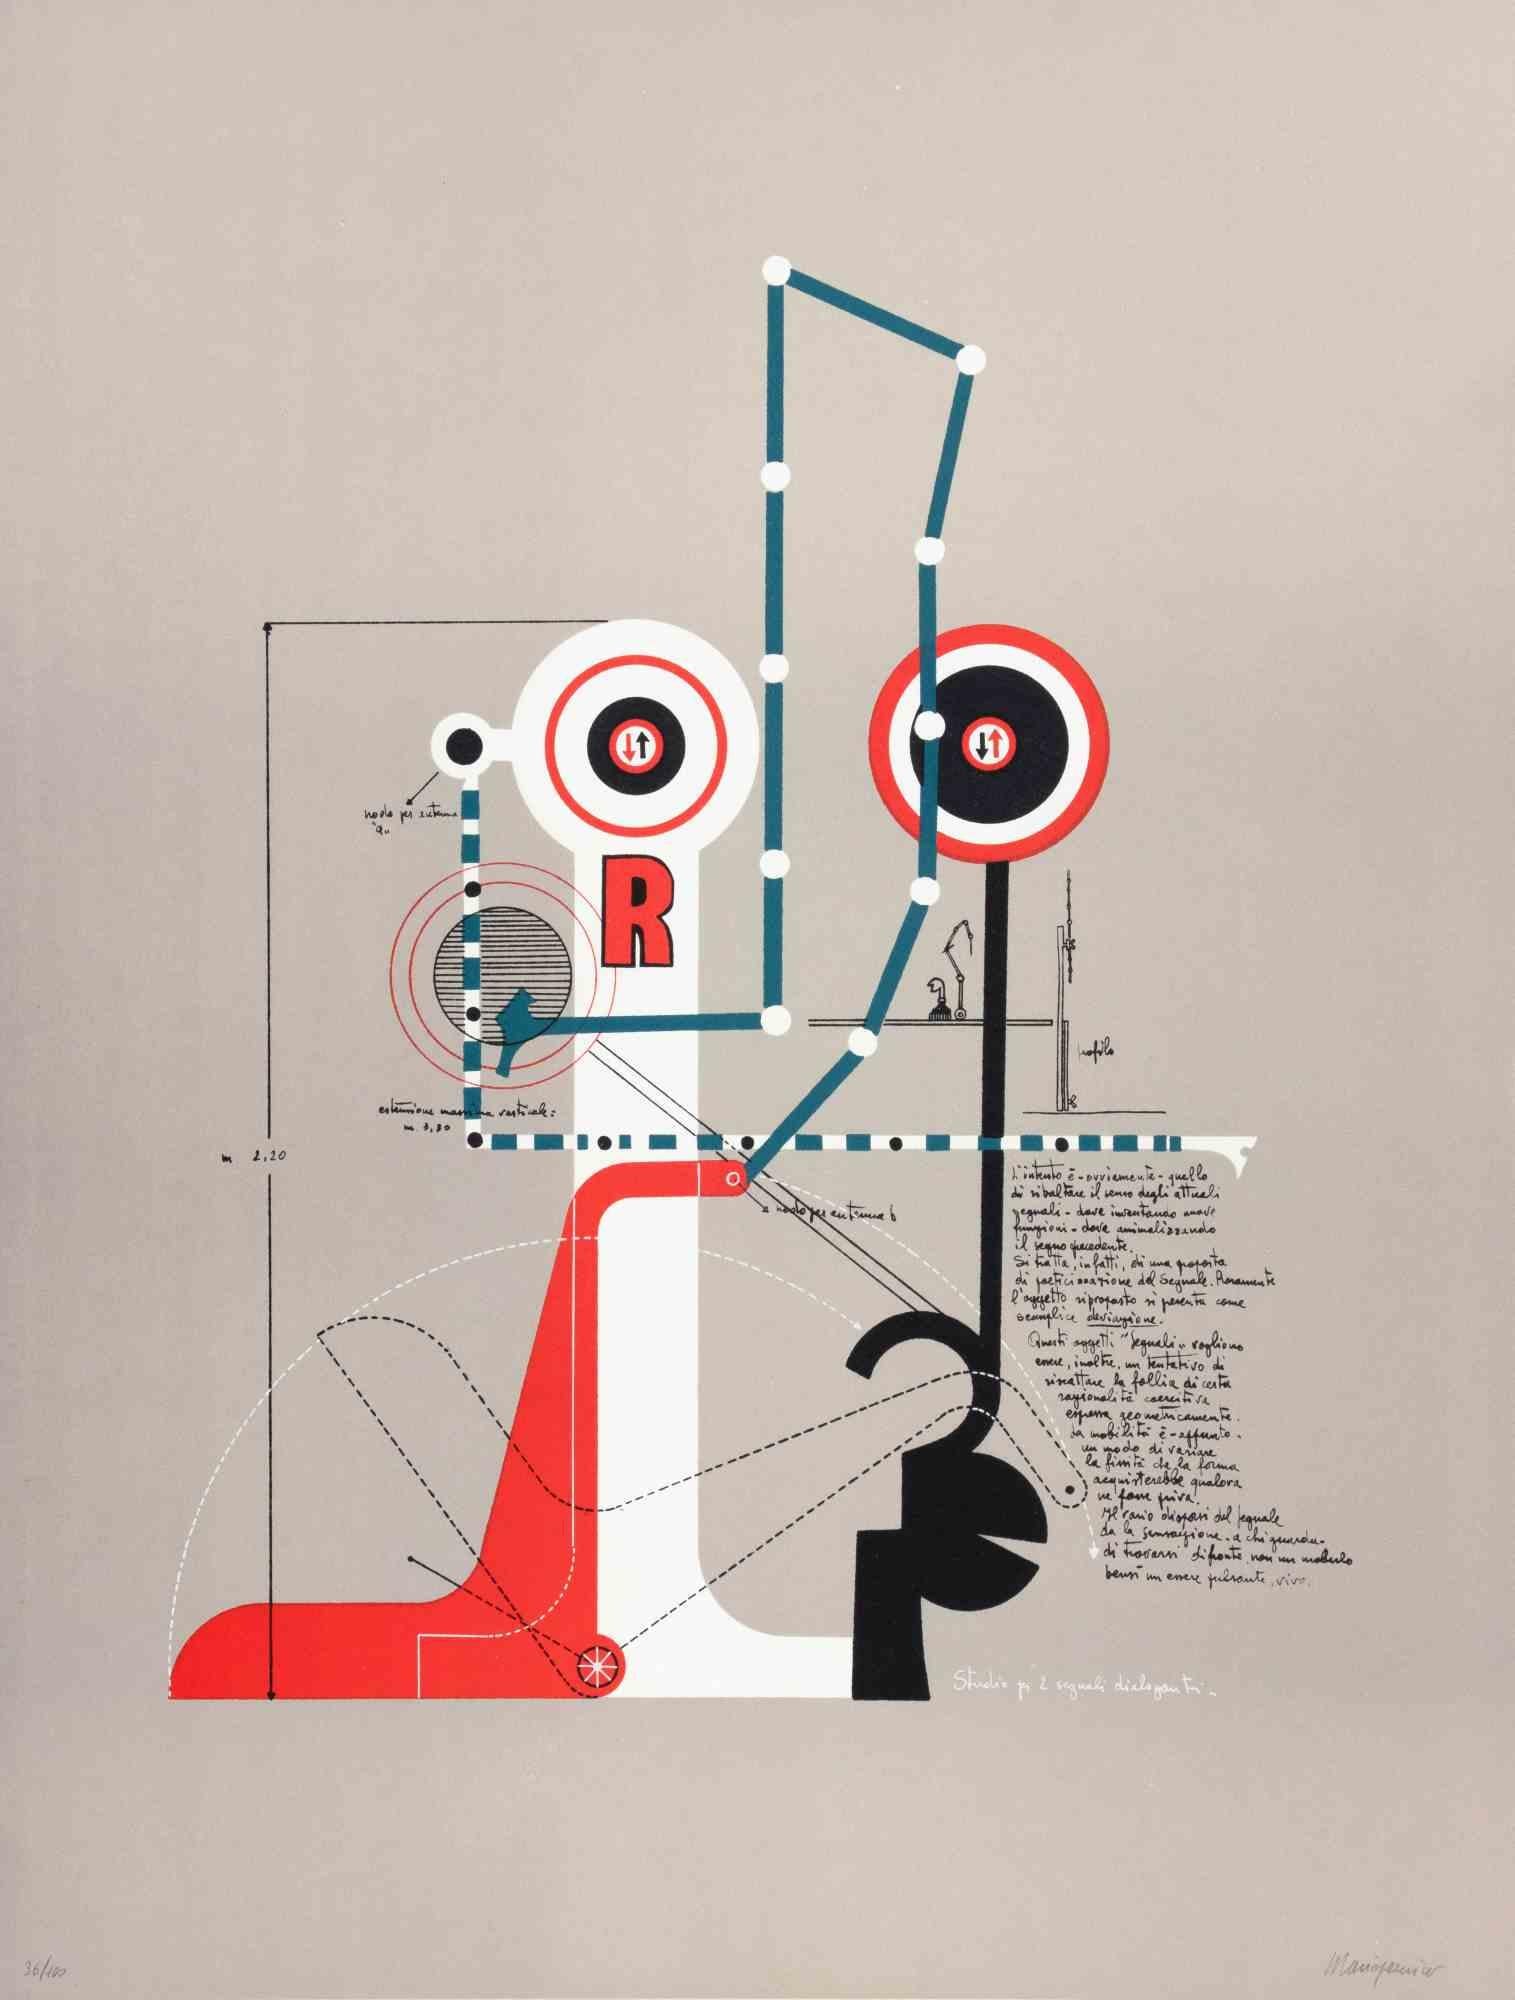 Studie für zwei kommunizierende Signale ist ein zeitgenössisches Kunstwerk von Mario Persico aus den 1970er Jahren.

Gemischtfarbige Lithographie

Titel am unteren Rand.

Vom Künstler handsigniert

Am unteren Rand nummeriert. Auflage von